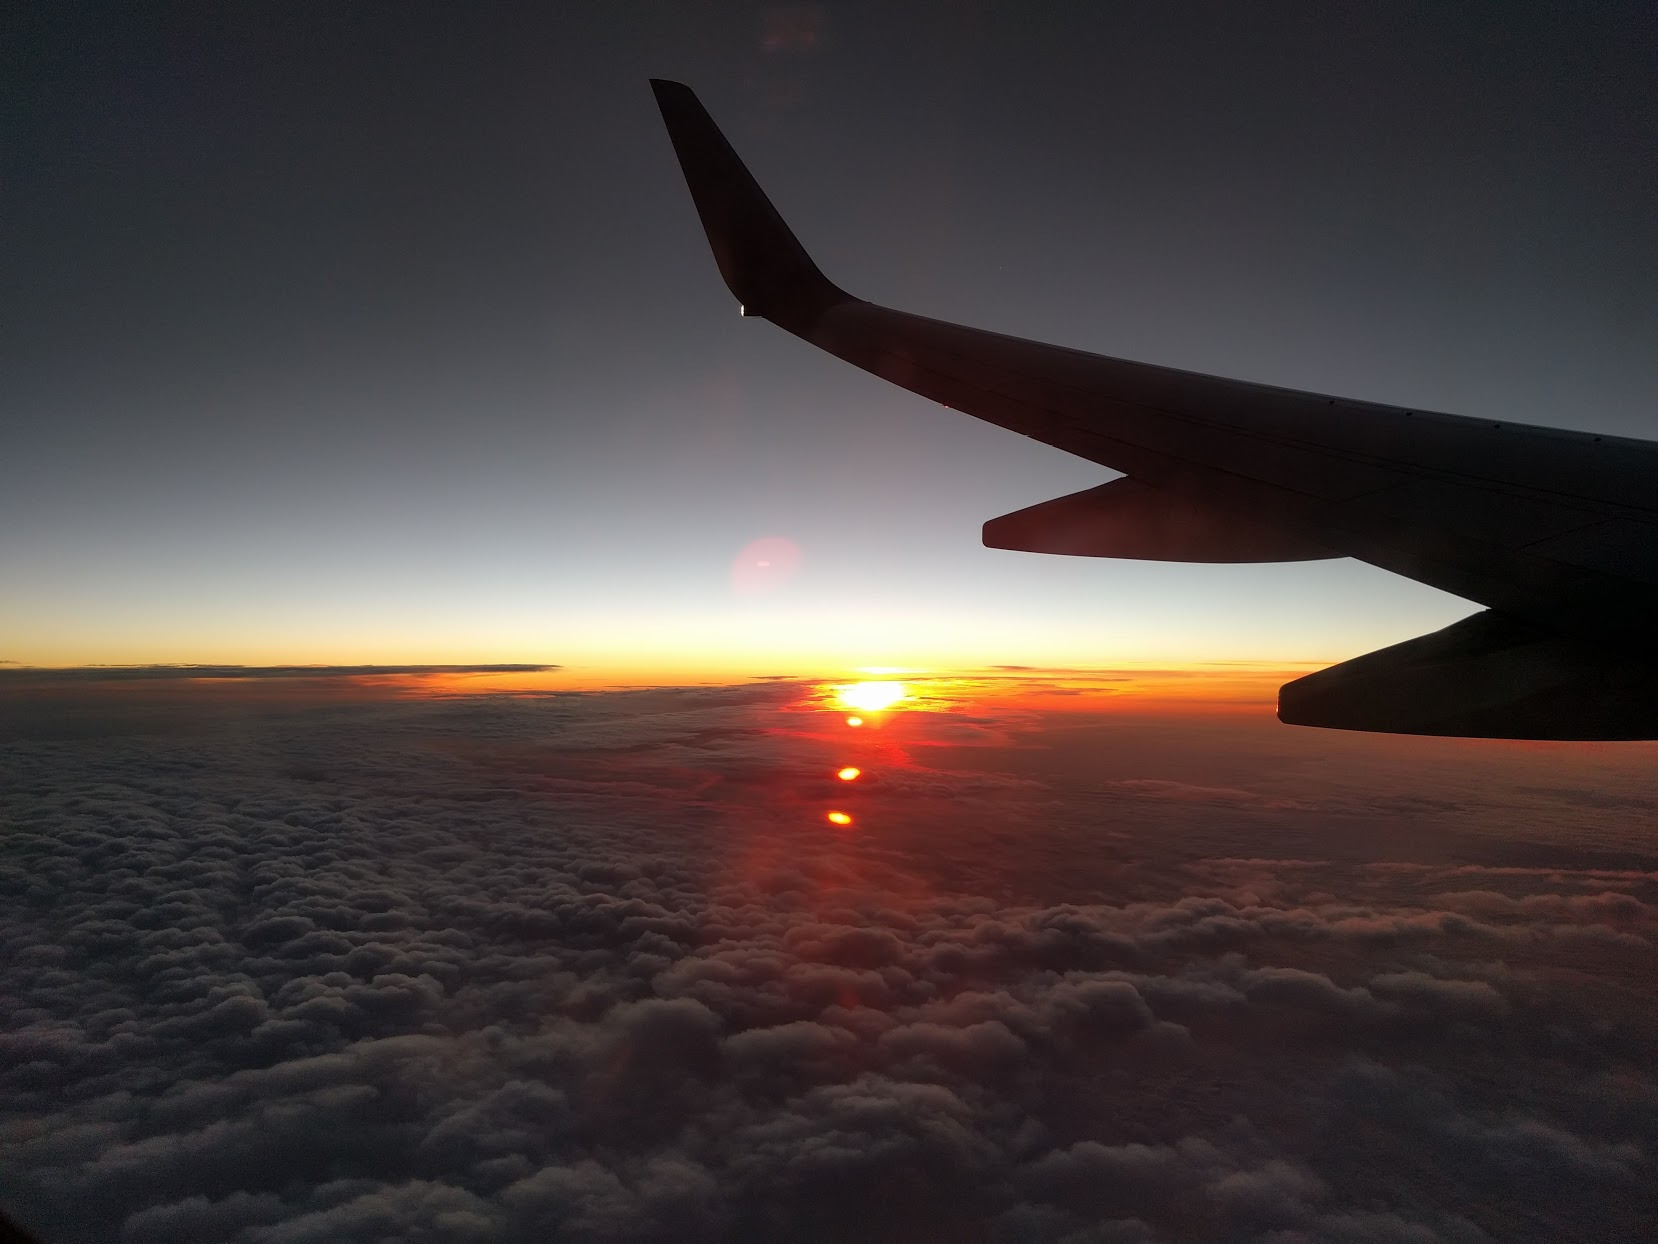 Sunset flightview